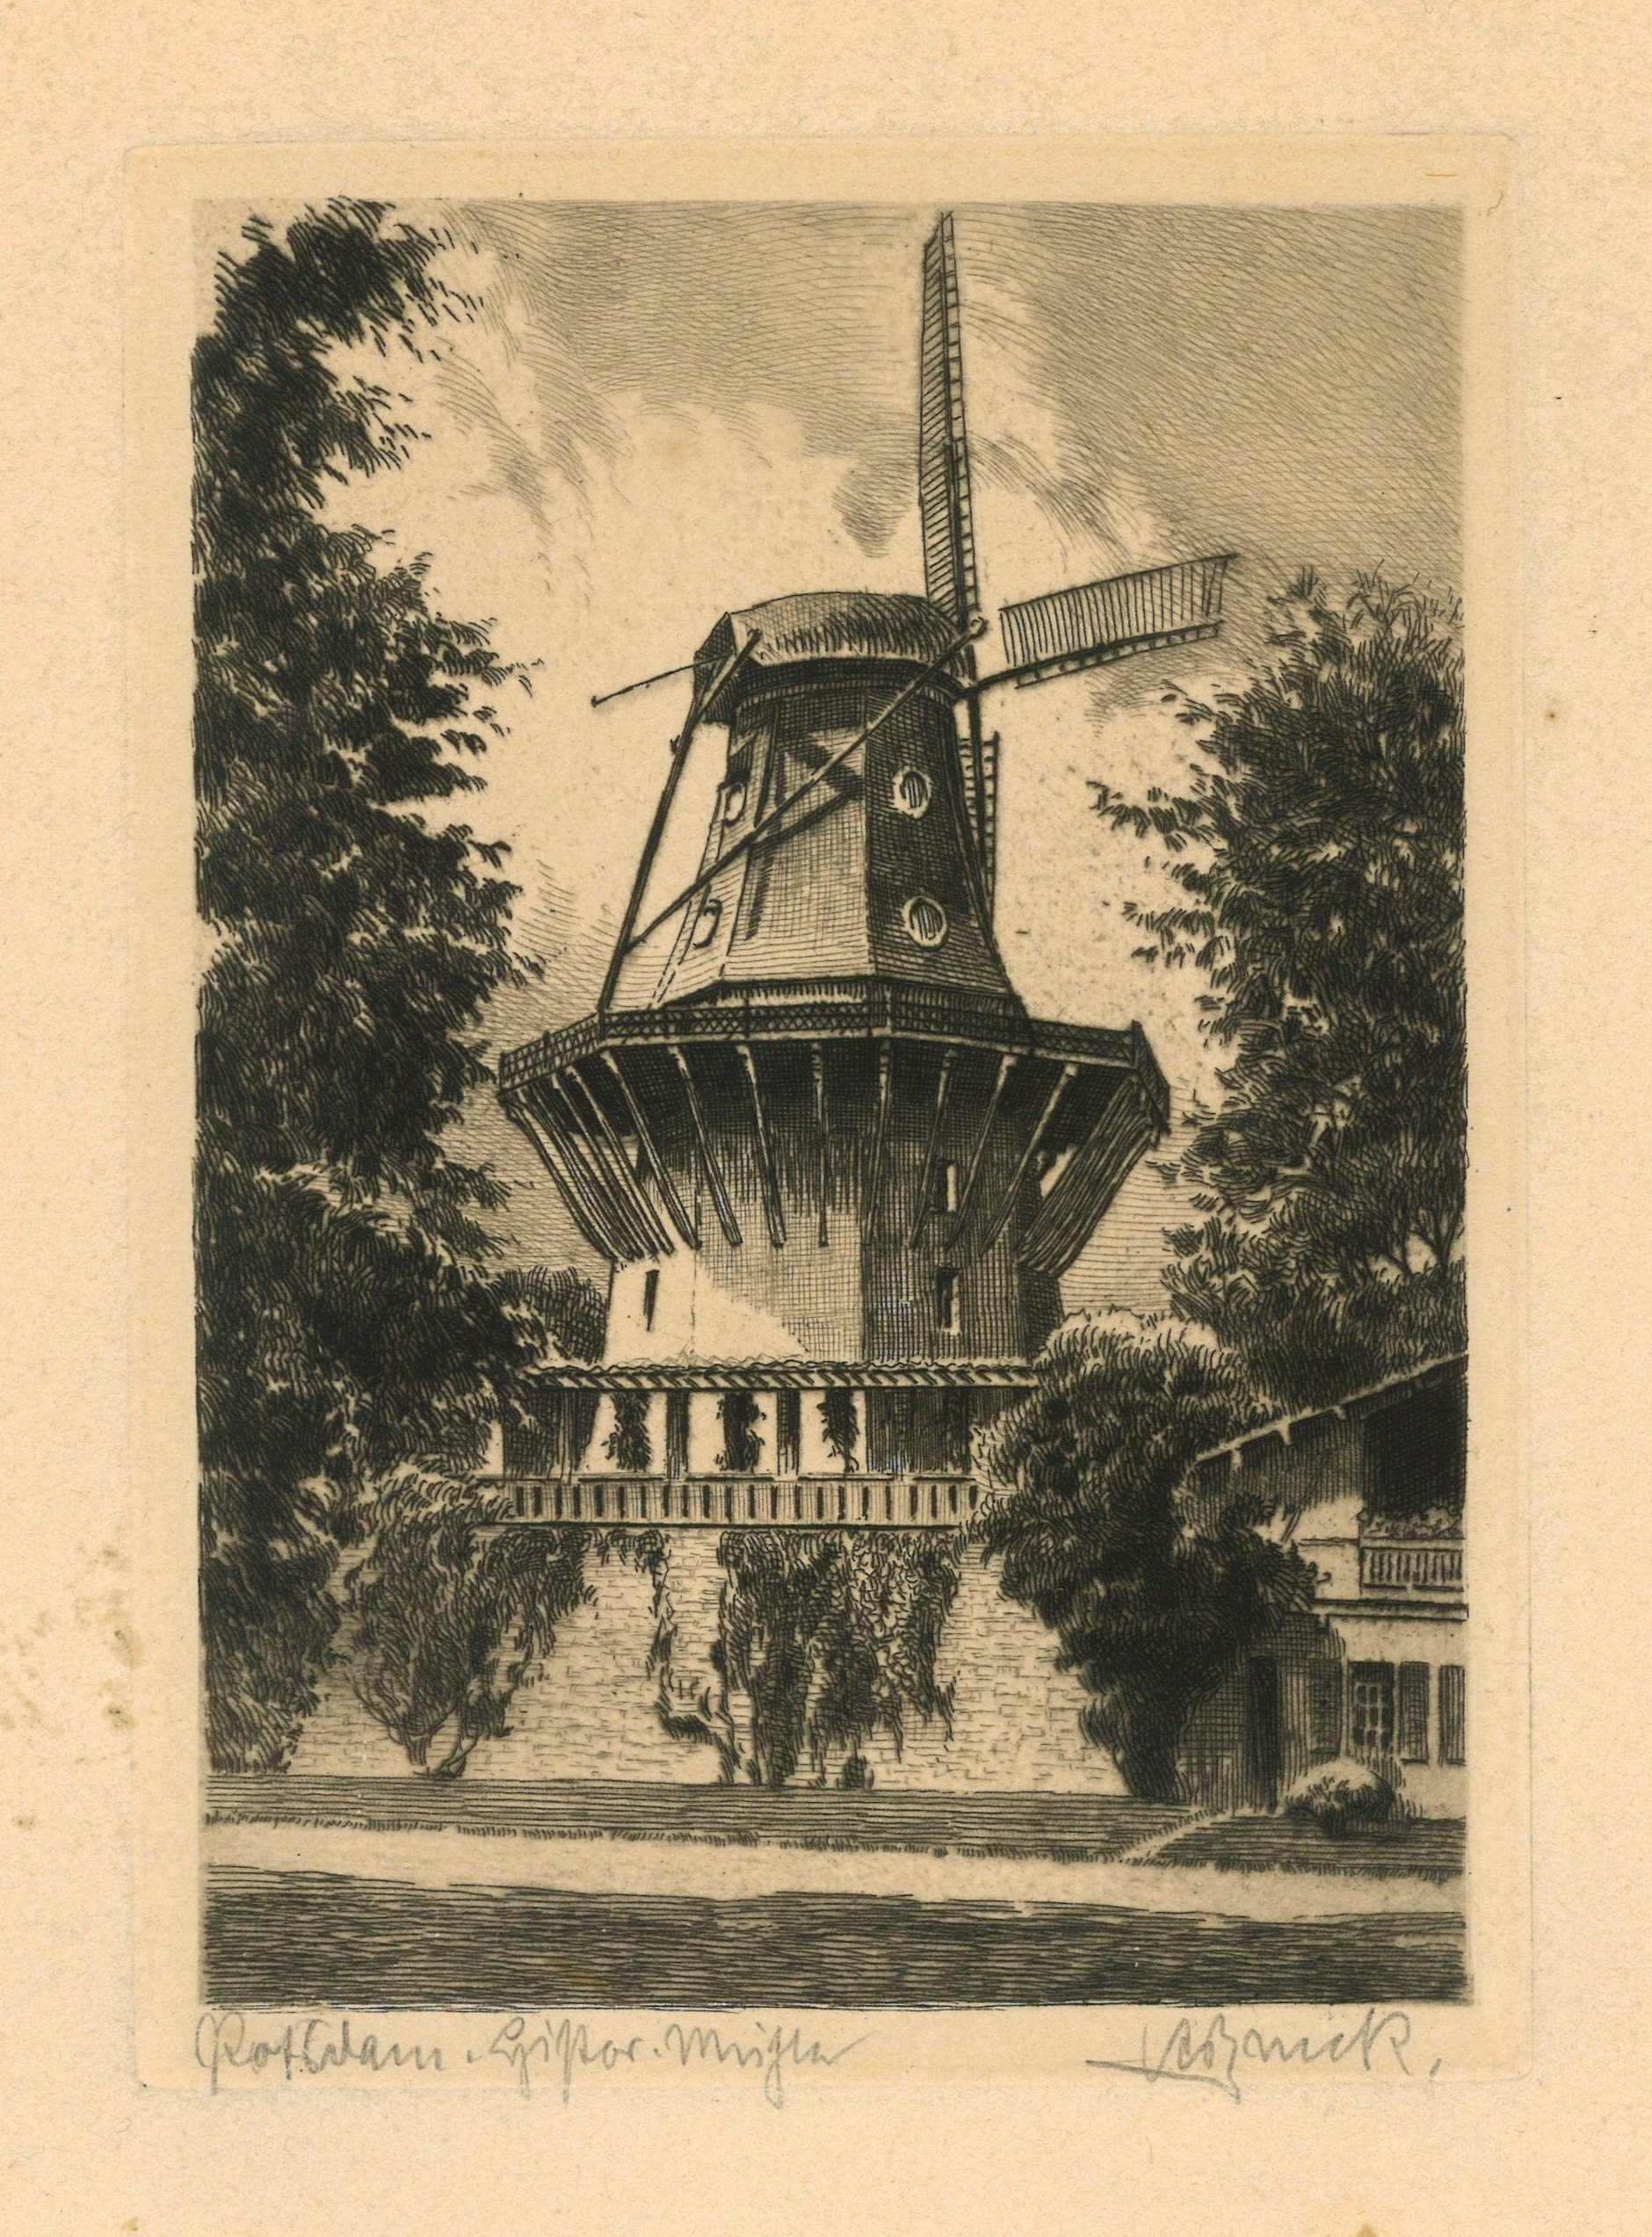 Potsdam-Sanssouci: Historische Mühle von Osten (Landesgeschichtliche Vereinigung für die Mark Brandenburg e.V., Archiv CC BY)